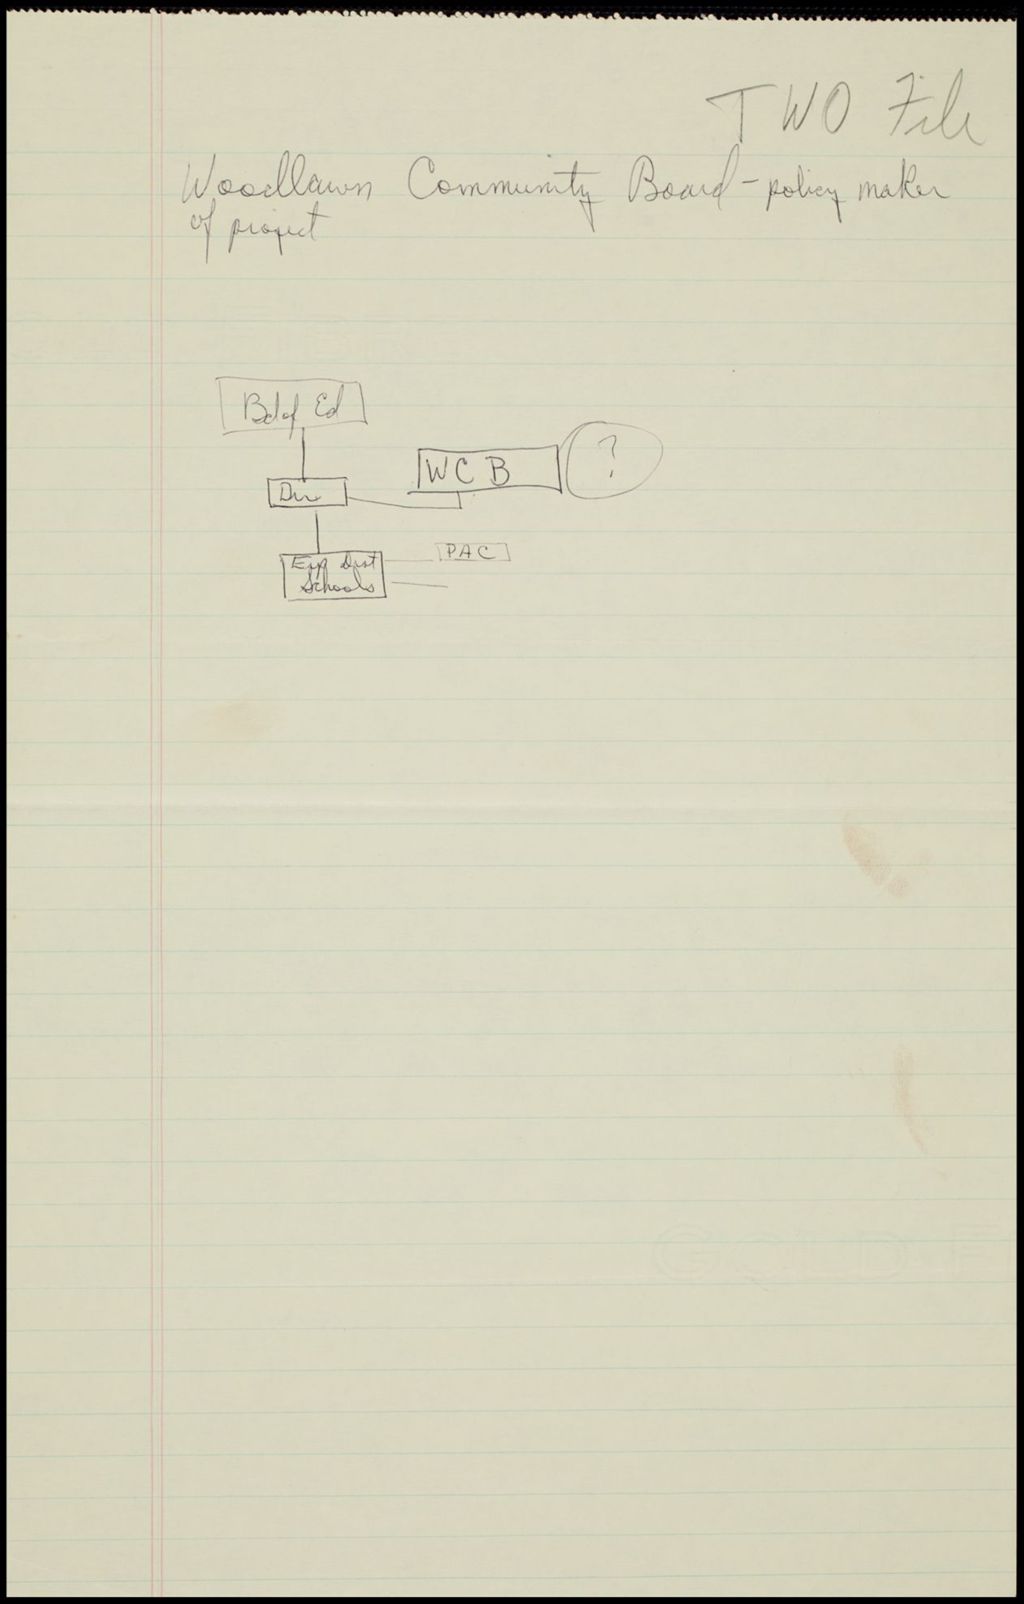 TWO -Correspondence, 1967-1968 (Folder II-93)